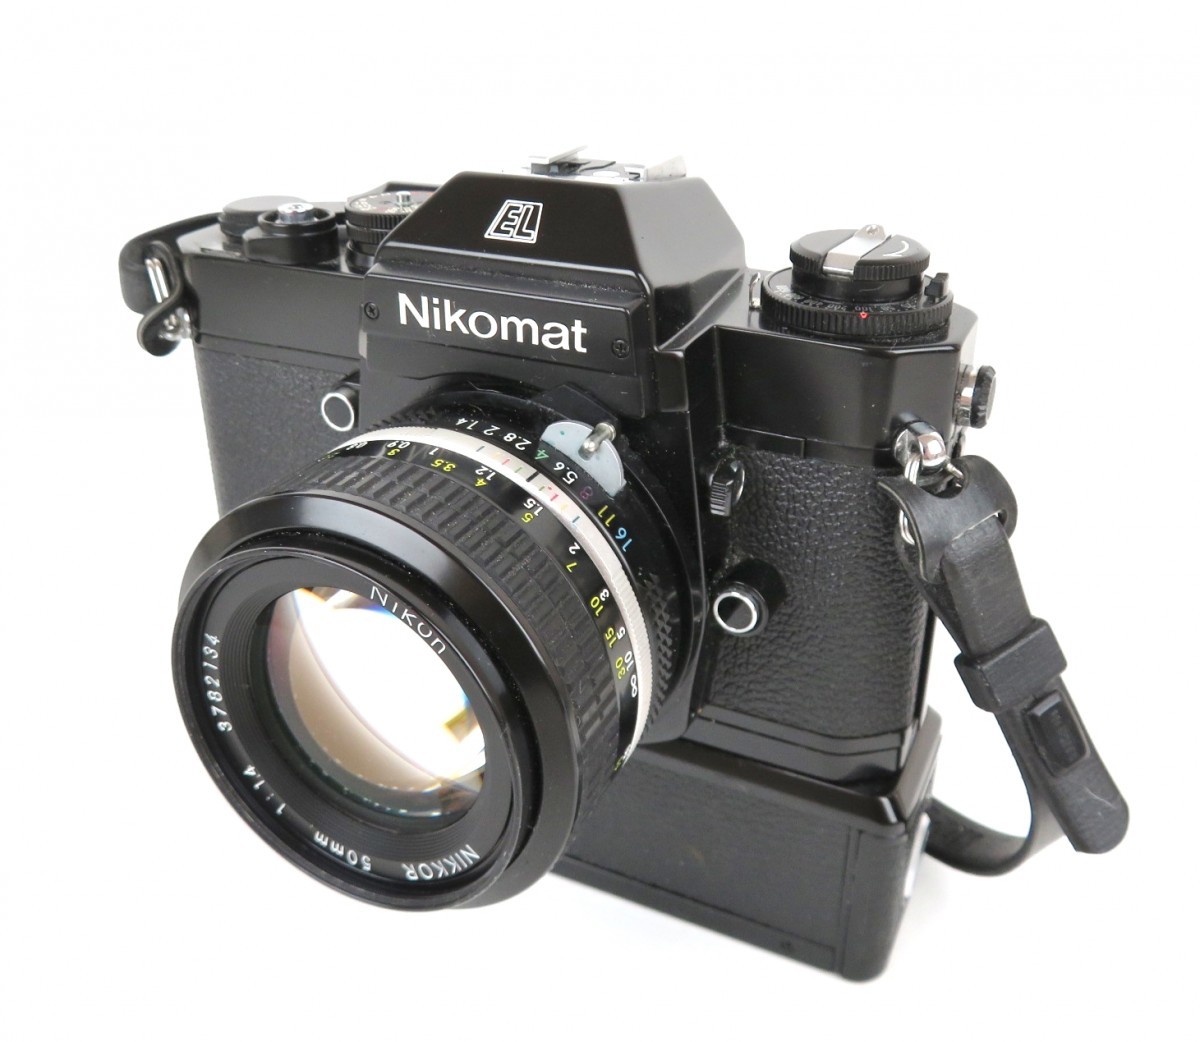 １着でも送料無料】 Nikon NIKOMAT フィルムカメラ レンズ付 1:1.4 f